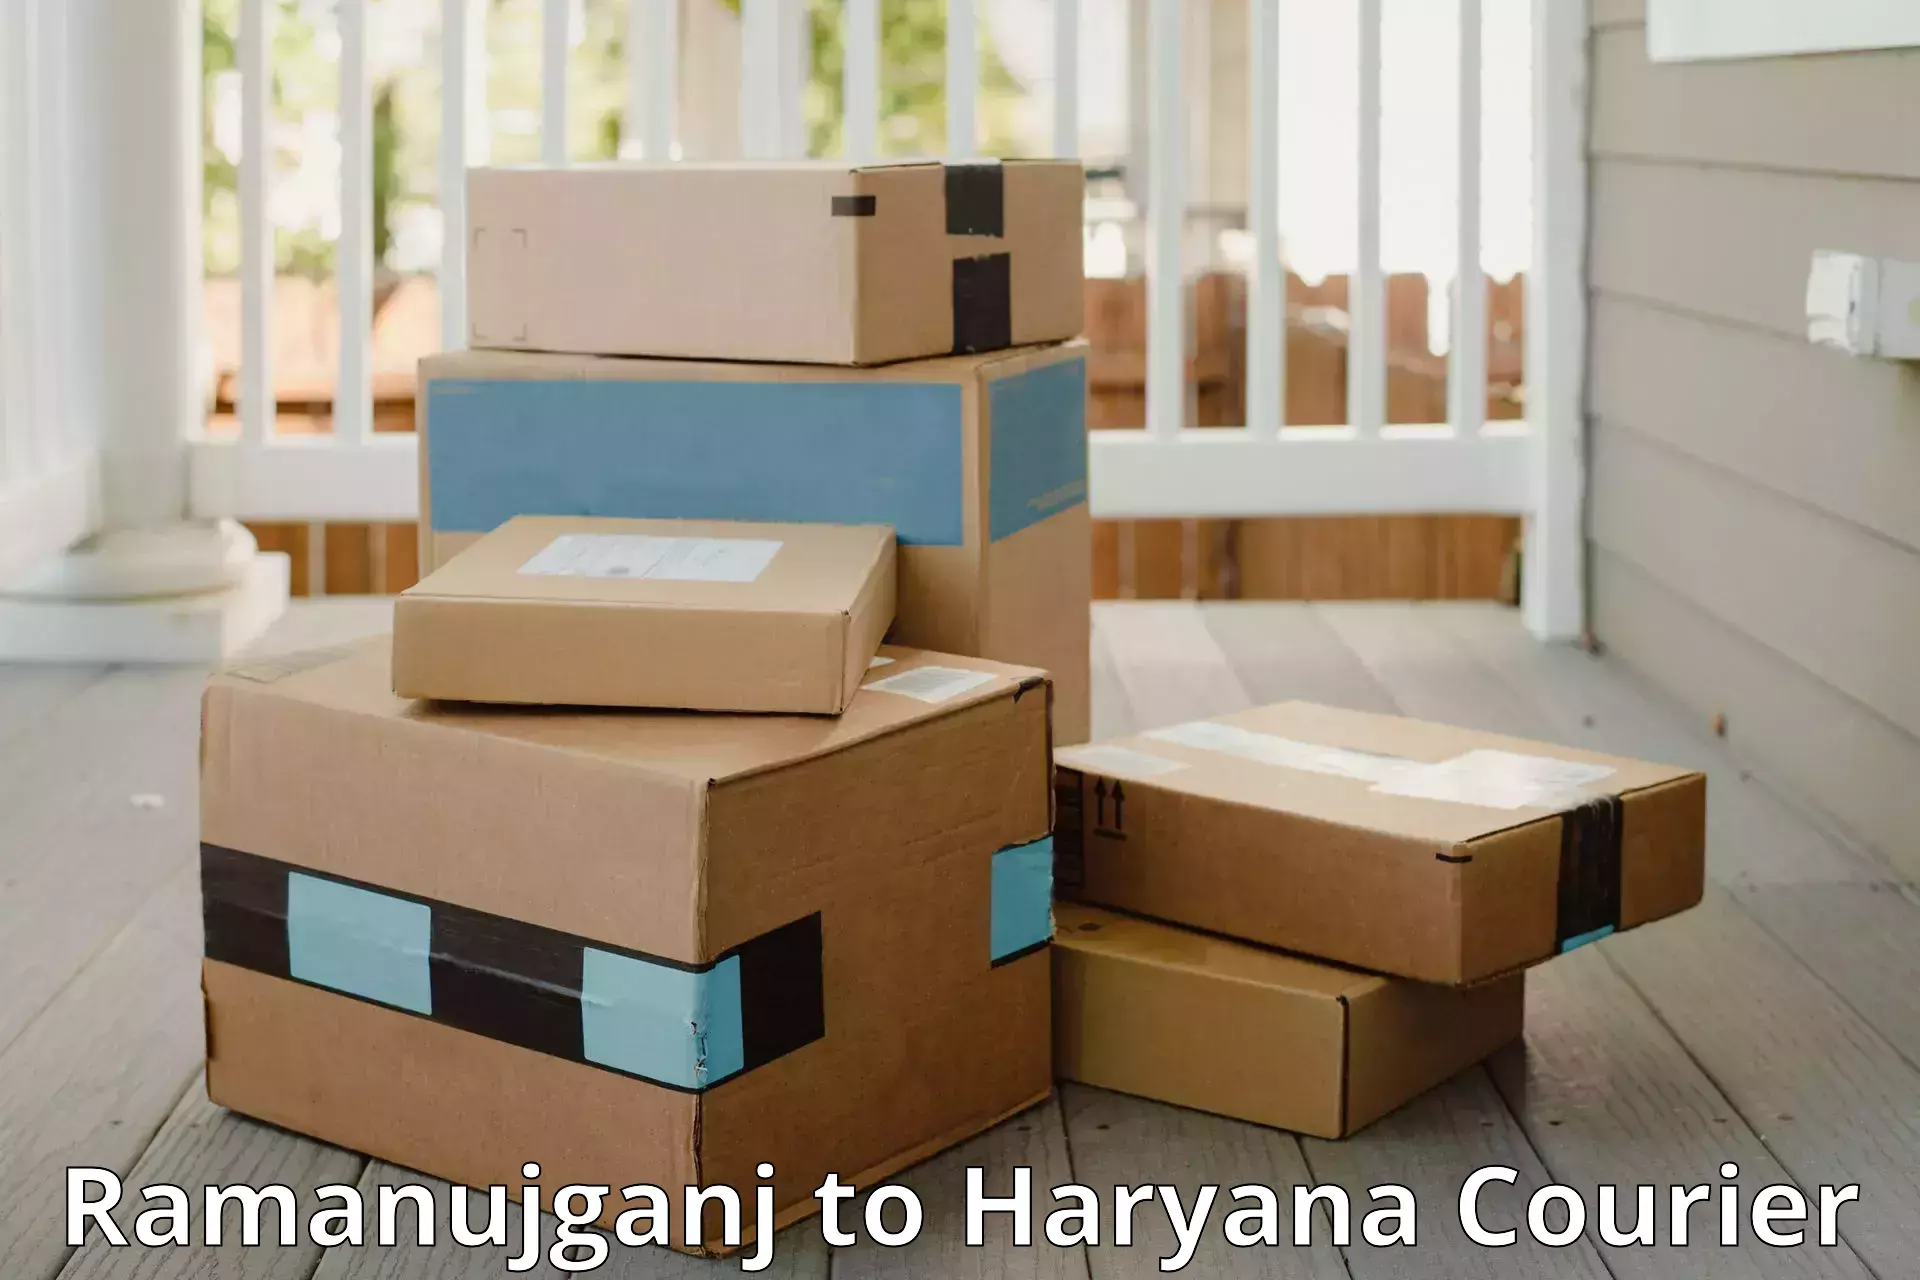 Customized luggage delivery Ramanujganj to IIIT Sonepat